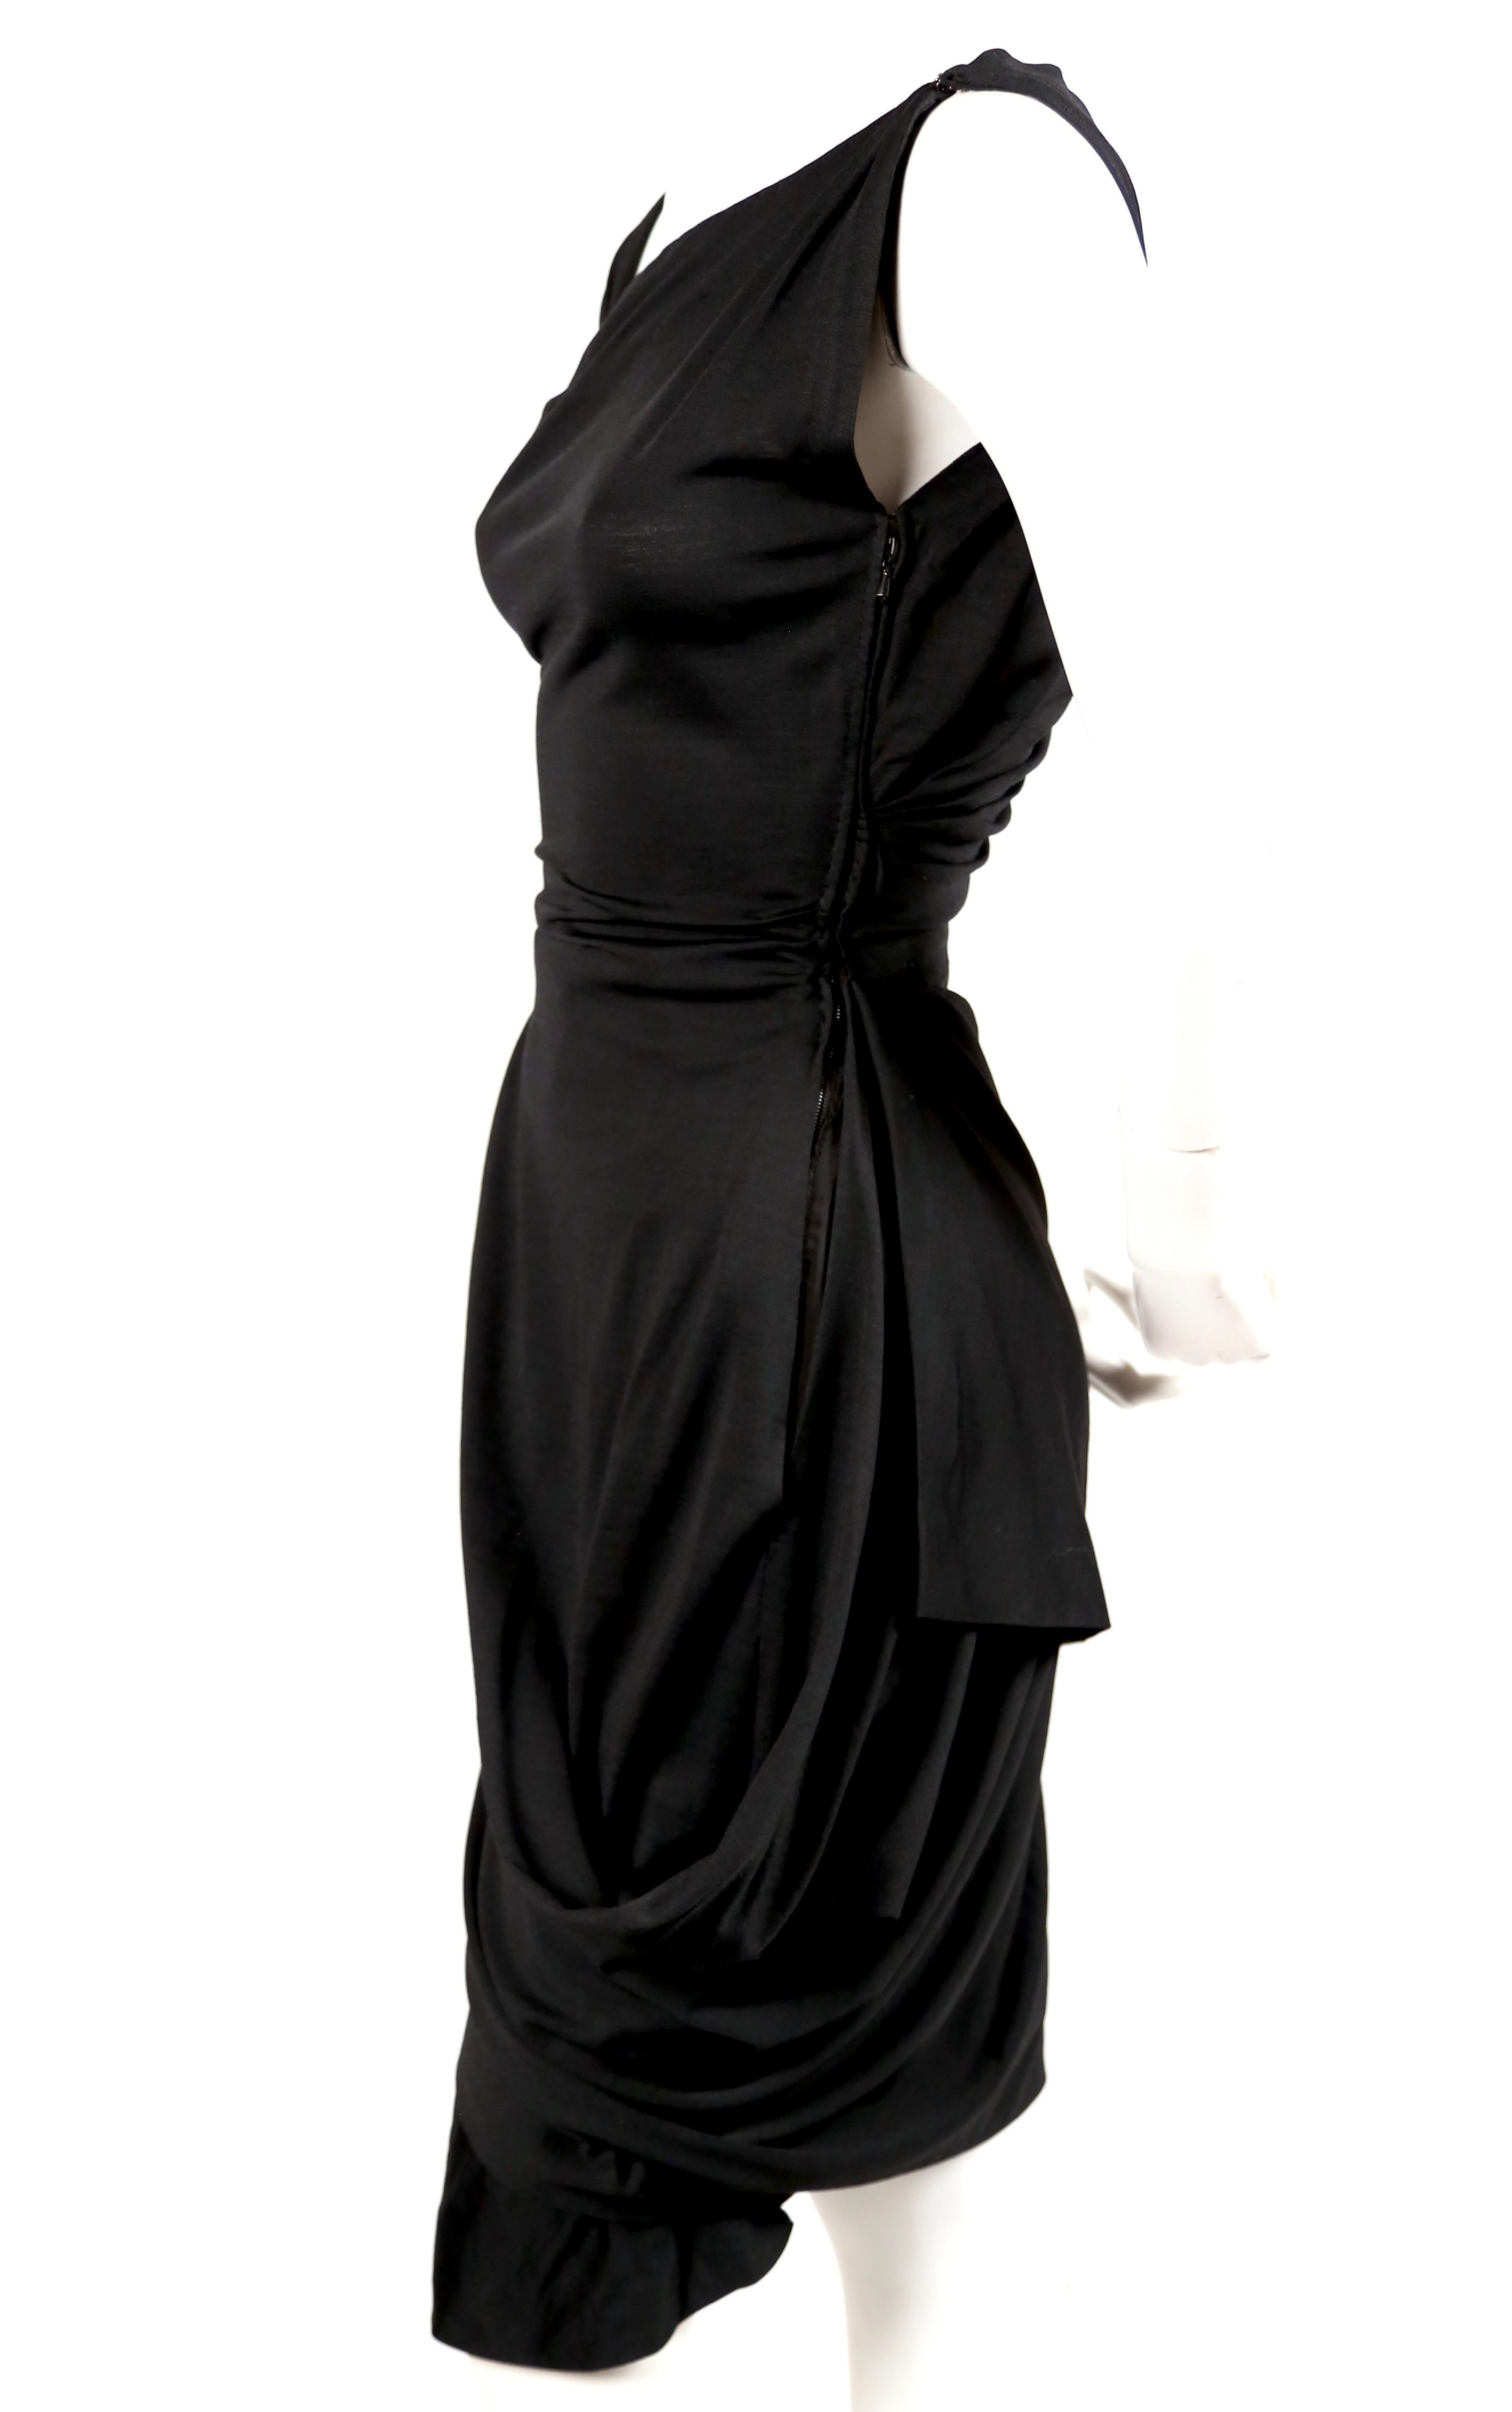 Très rare robe haute couture en jersey de soie noir de jais à coupe asymétrique et drapée de Pedro Rodriguez datant des années 1950. Convient parfaitement à une taille 2. Mesures approximatives : buste 32